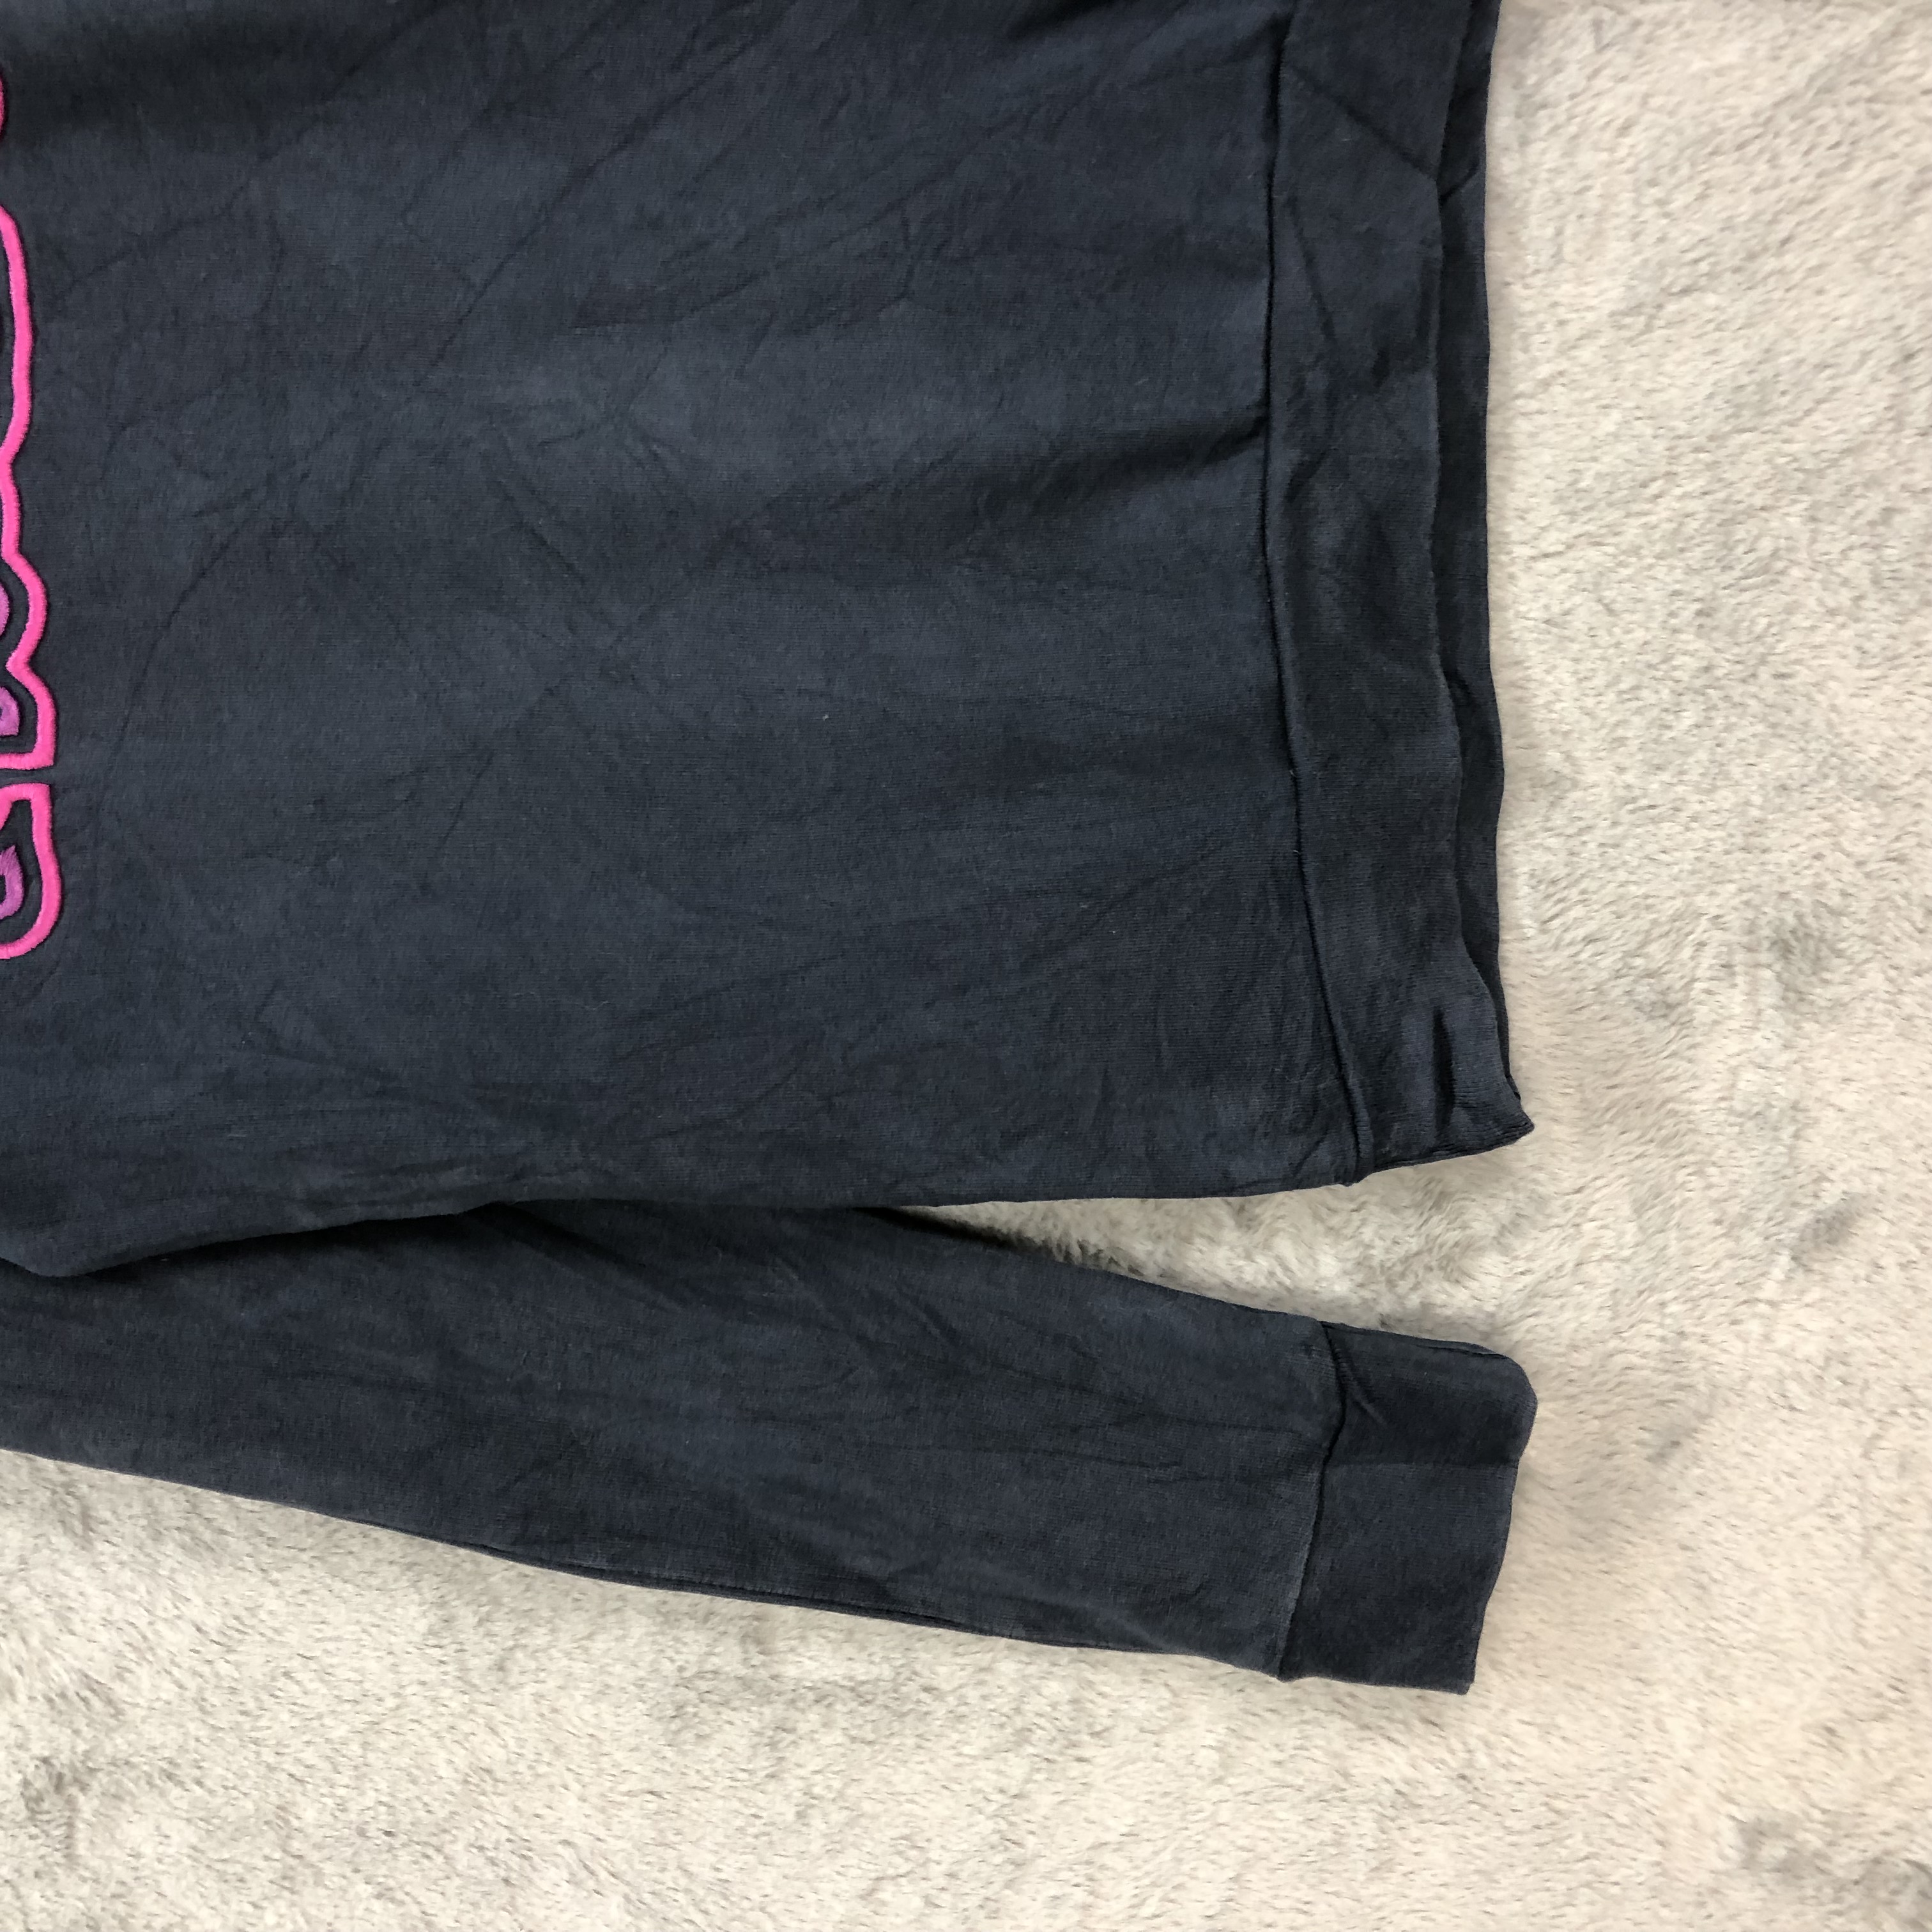 Lacoste Embroidery Big Logo Sweatshirts #5019-34 - 5